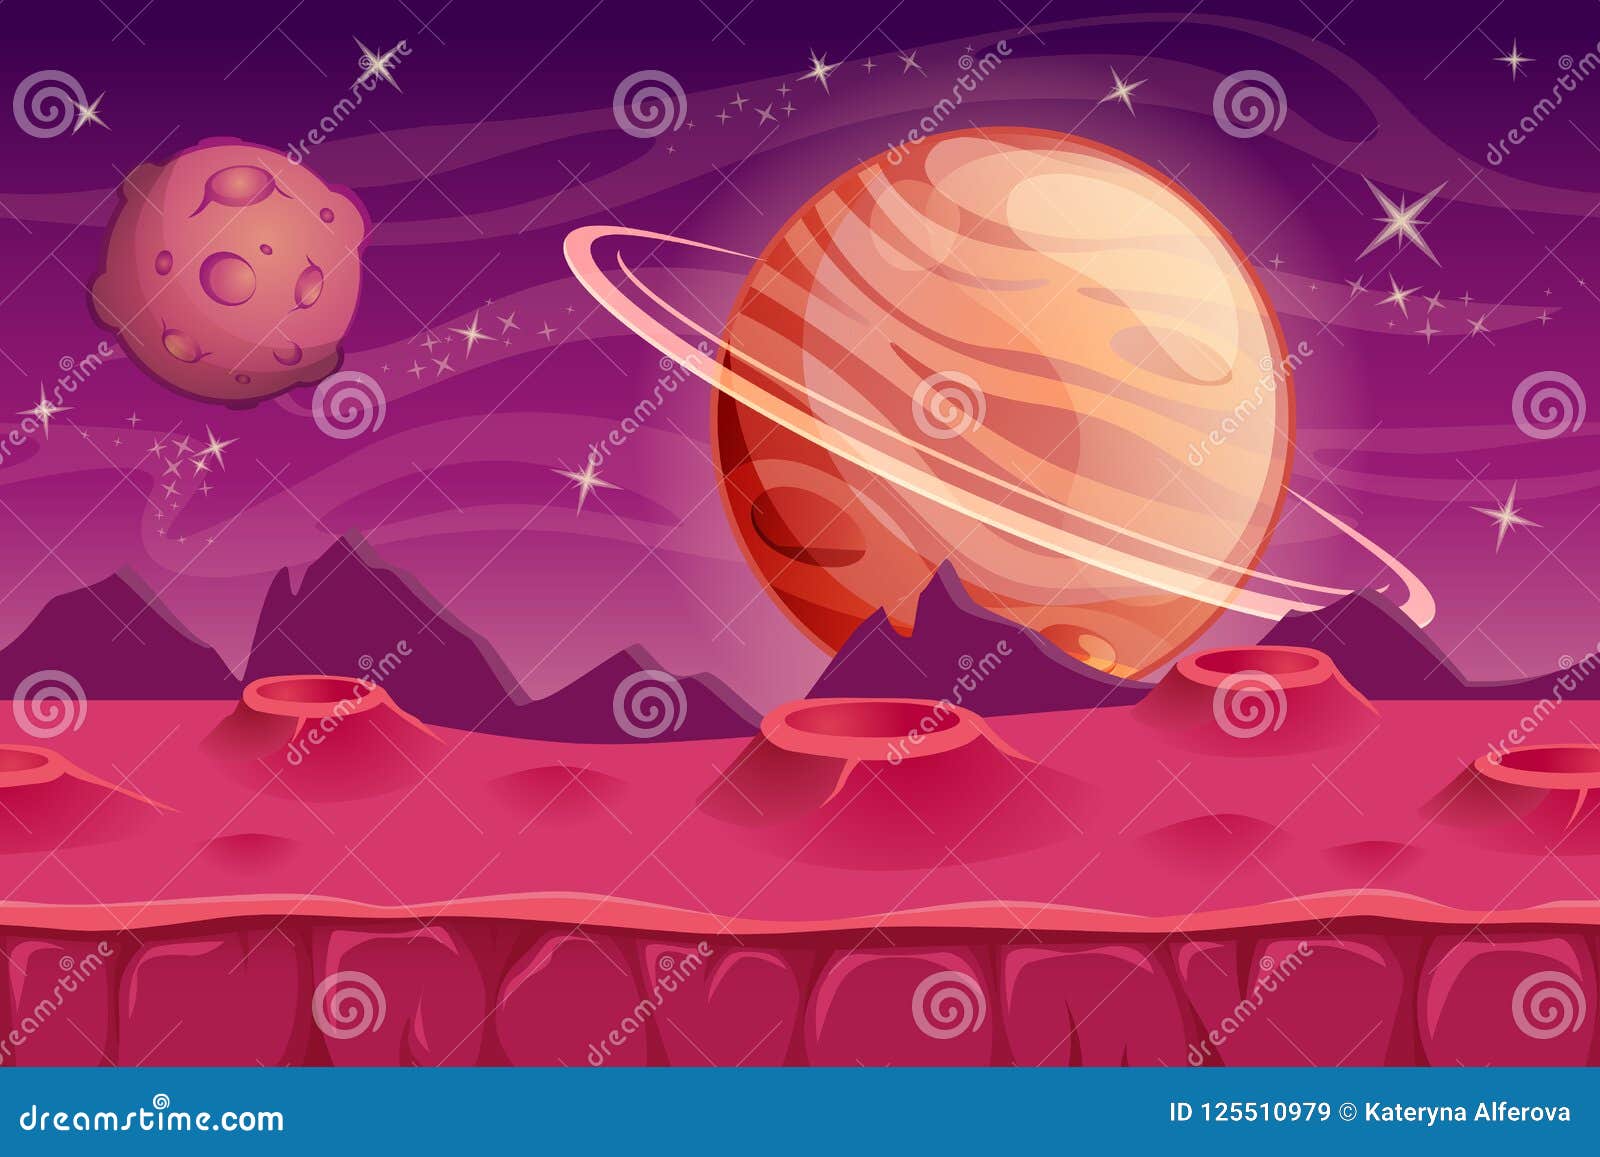 fantasy space background for ui game. alien landscape background